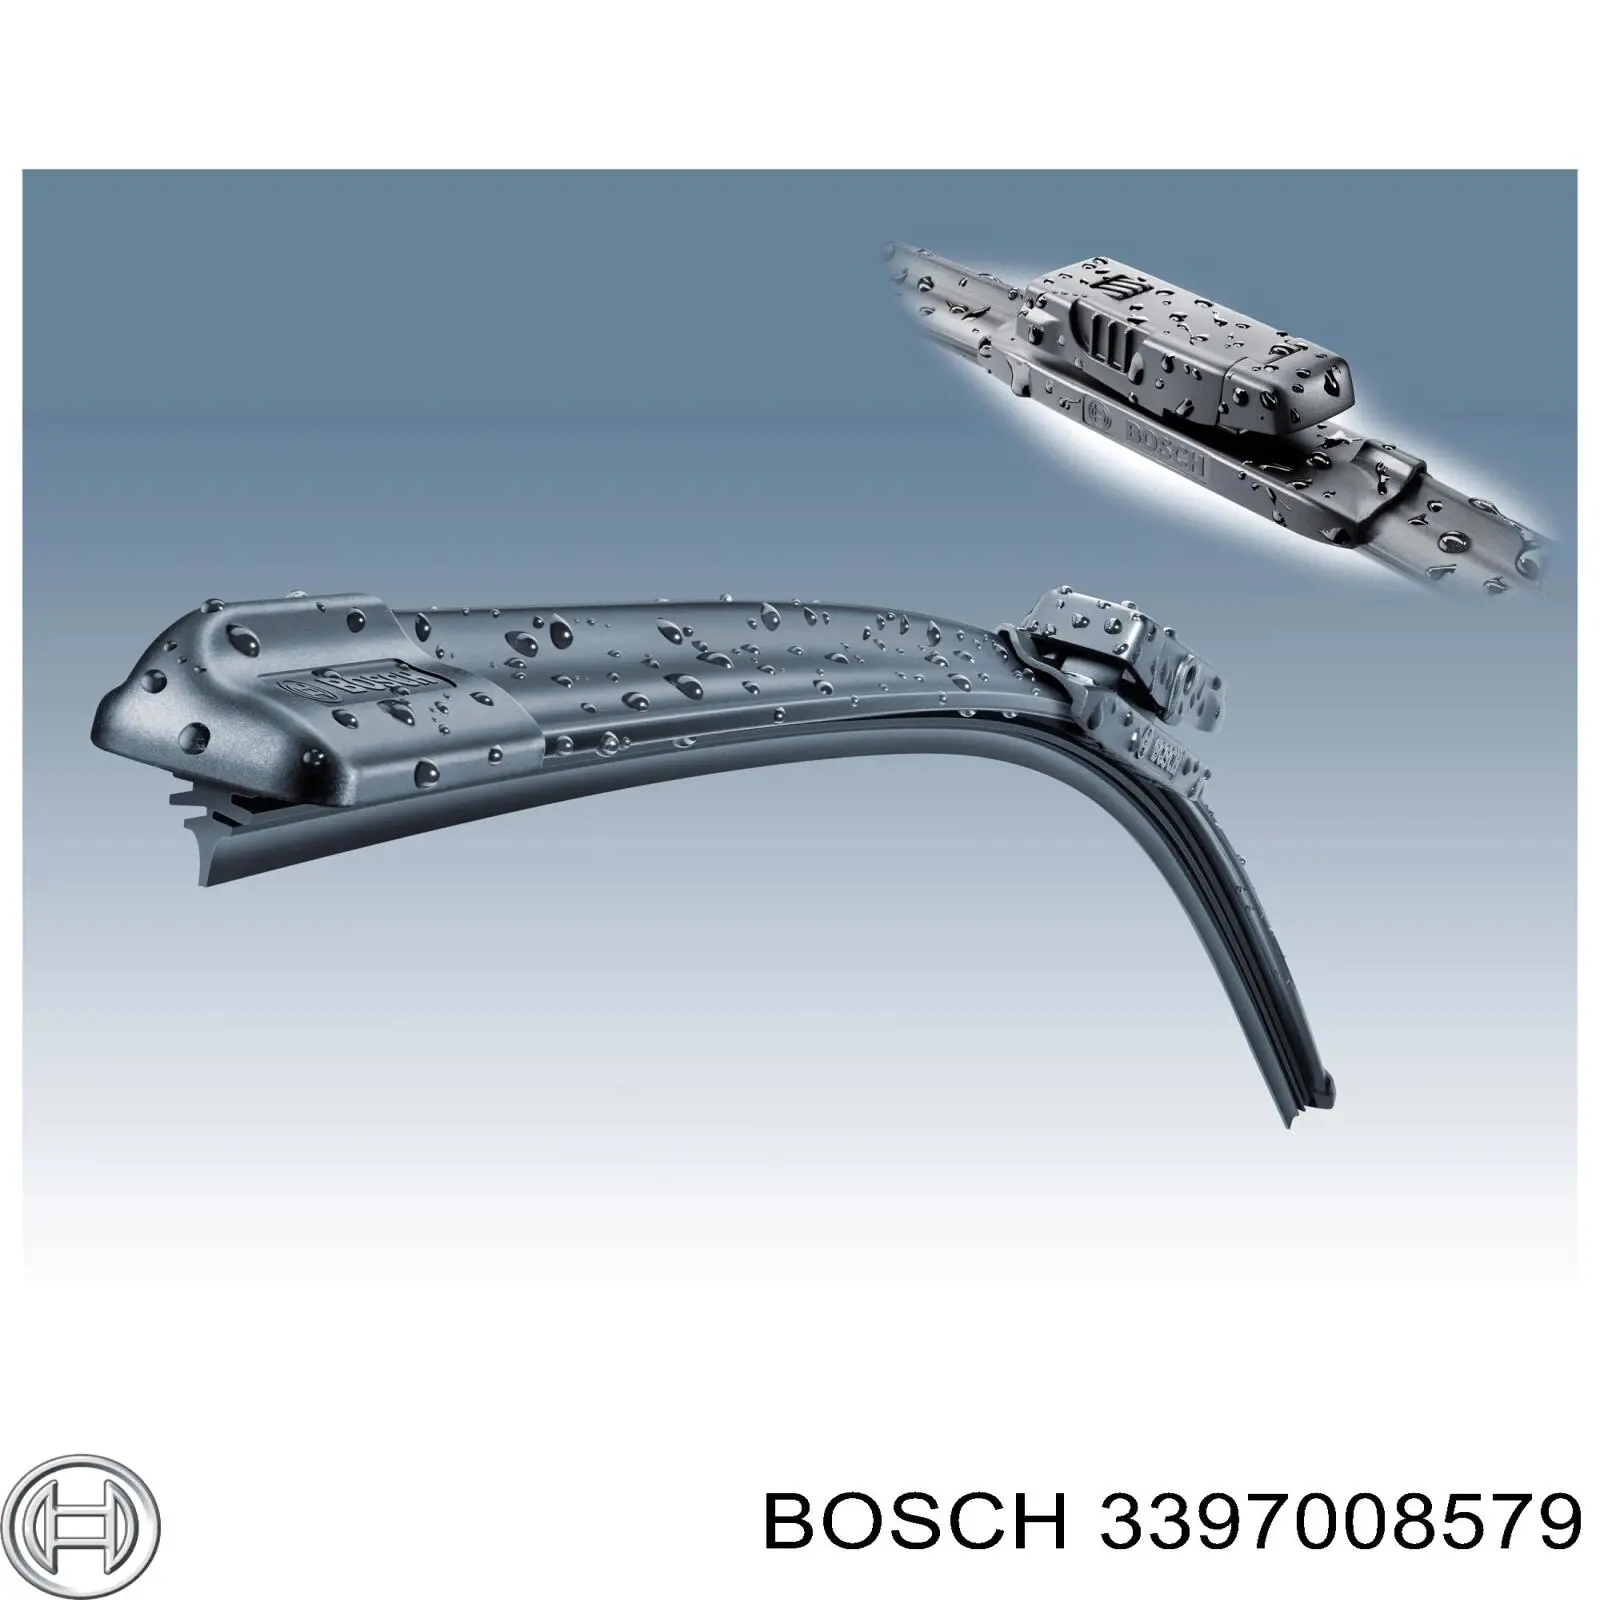 3397008579 Bosch limpiaparabrisas de luna delantera copiloto